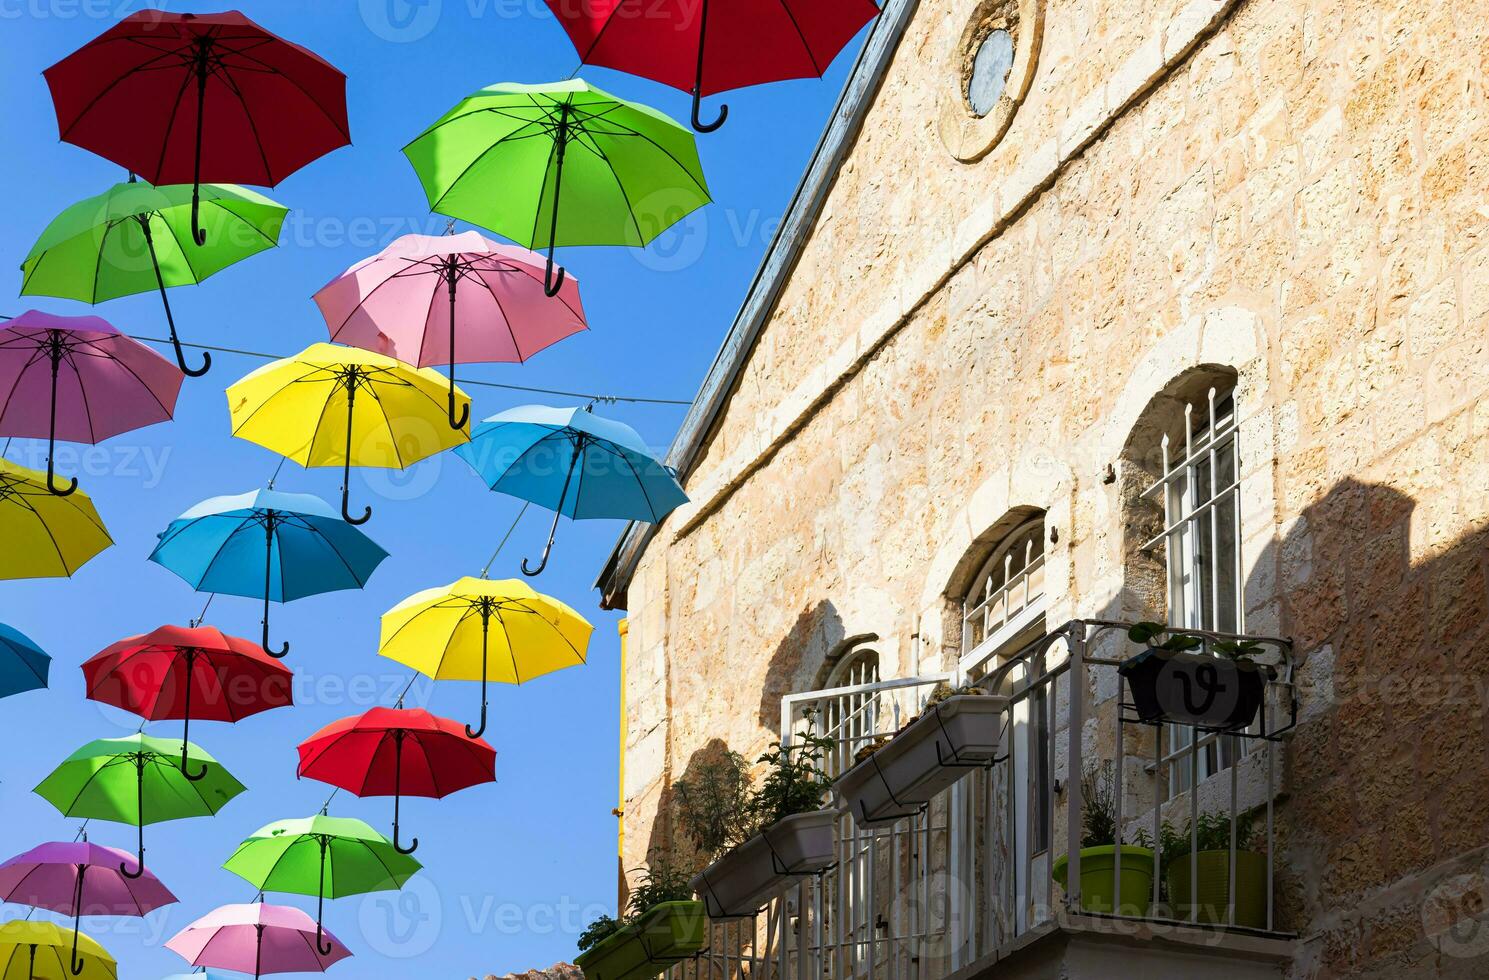 Jérusalem, Israël, nahalat shiva touristique promenade et coloré parapluie rue de vieux ville photo